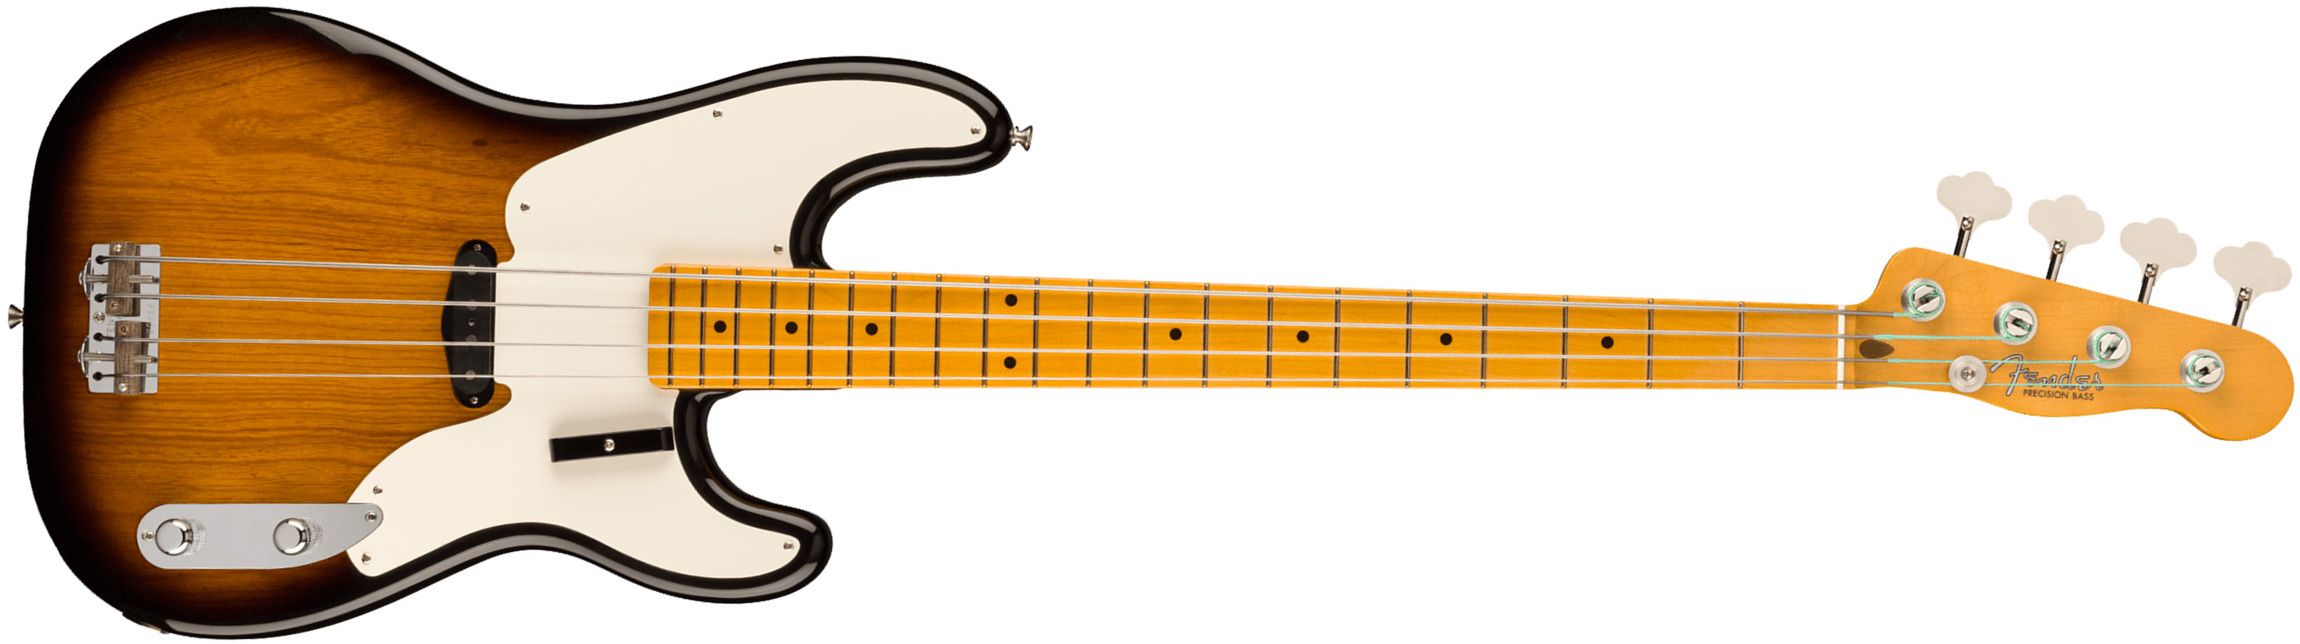 Fender Precision Bass 1954 American Vintage Ii Usa Mn - 2-color Sunburst - Basse Électrique Solid Body - Main picture